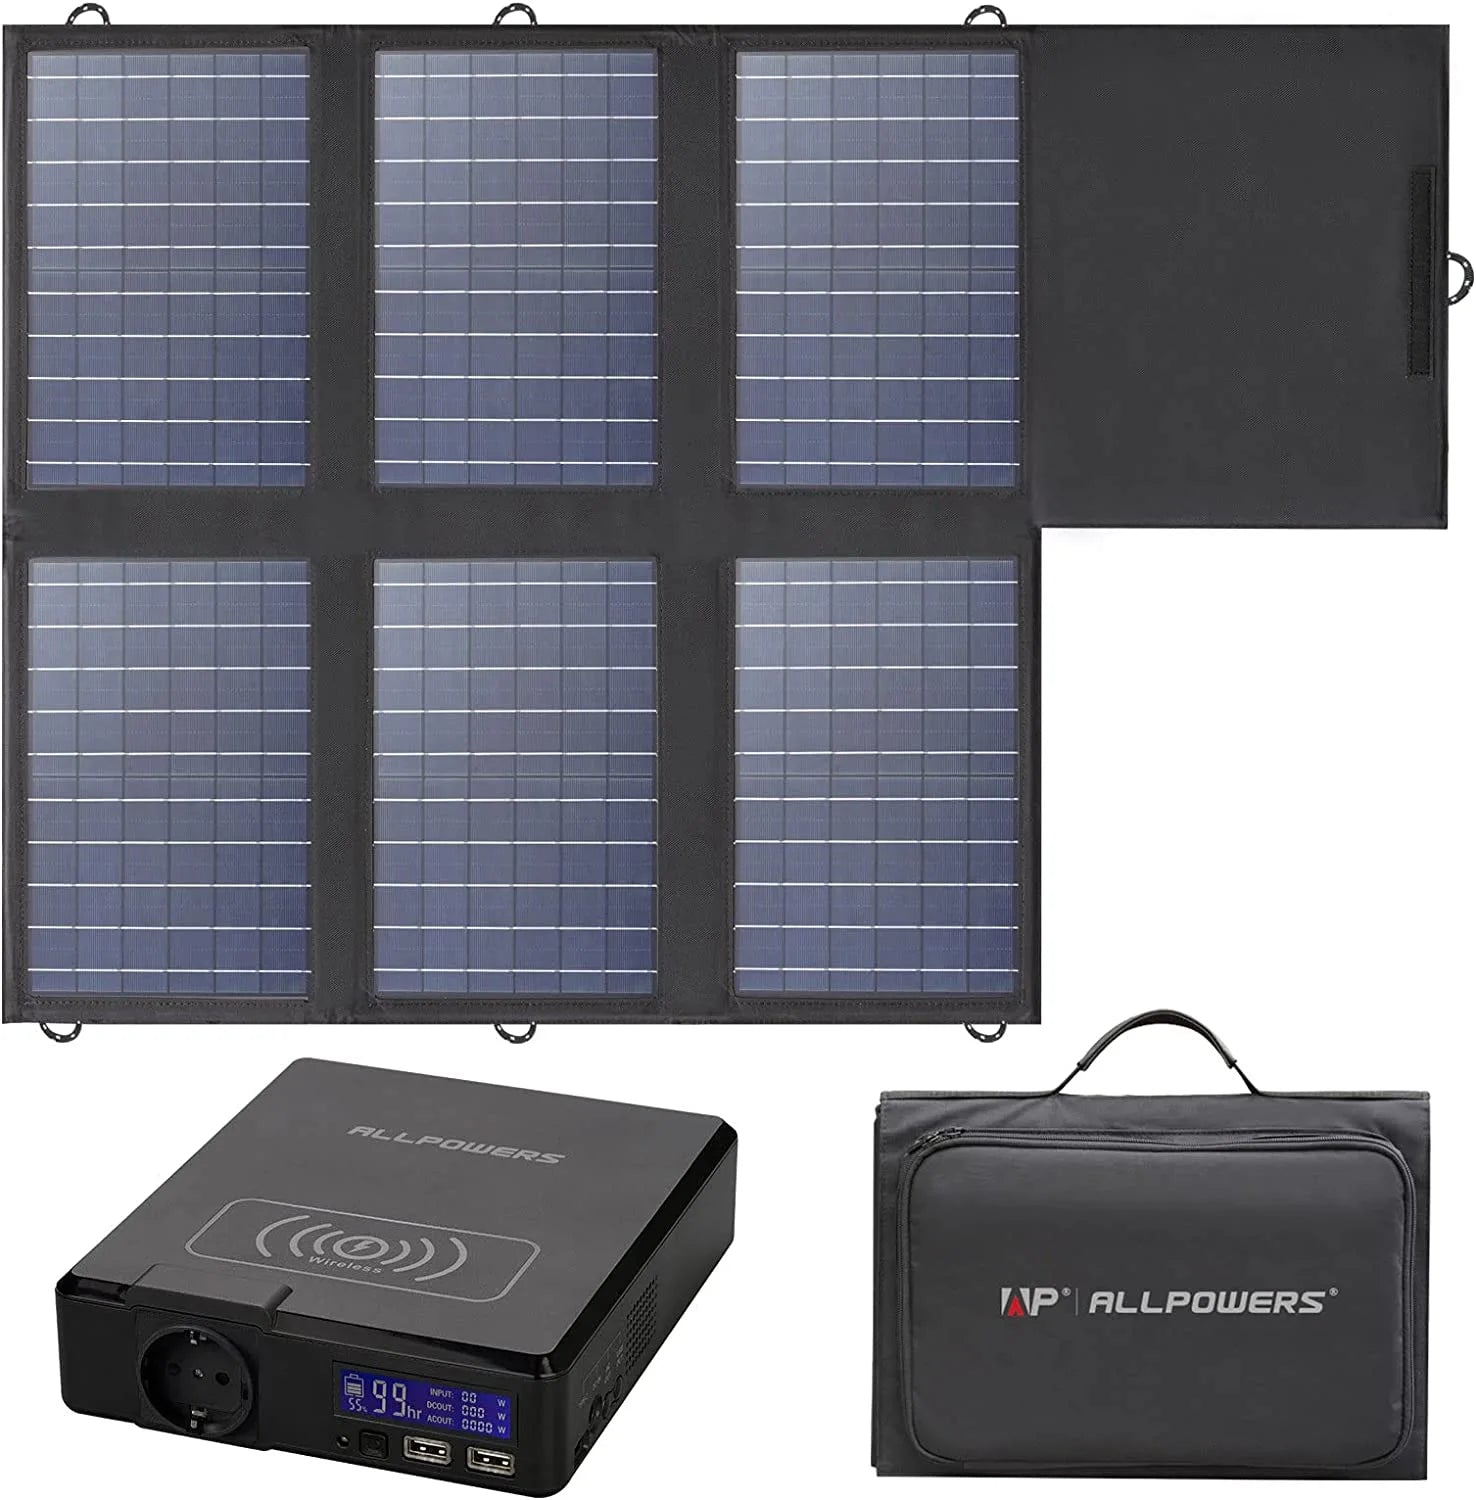 ALLPOWERS solar generator S200 (S200 + SP012 mono solar panel 100W)